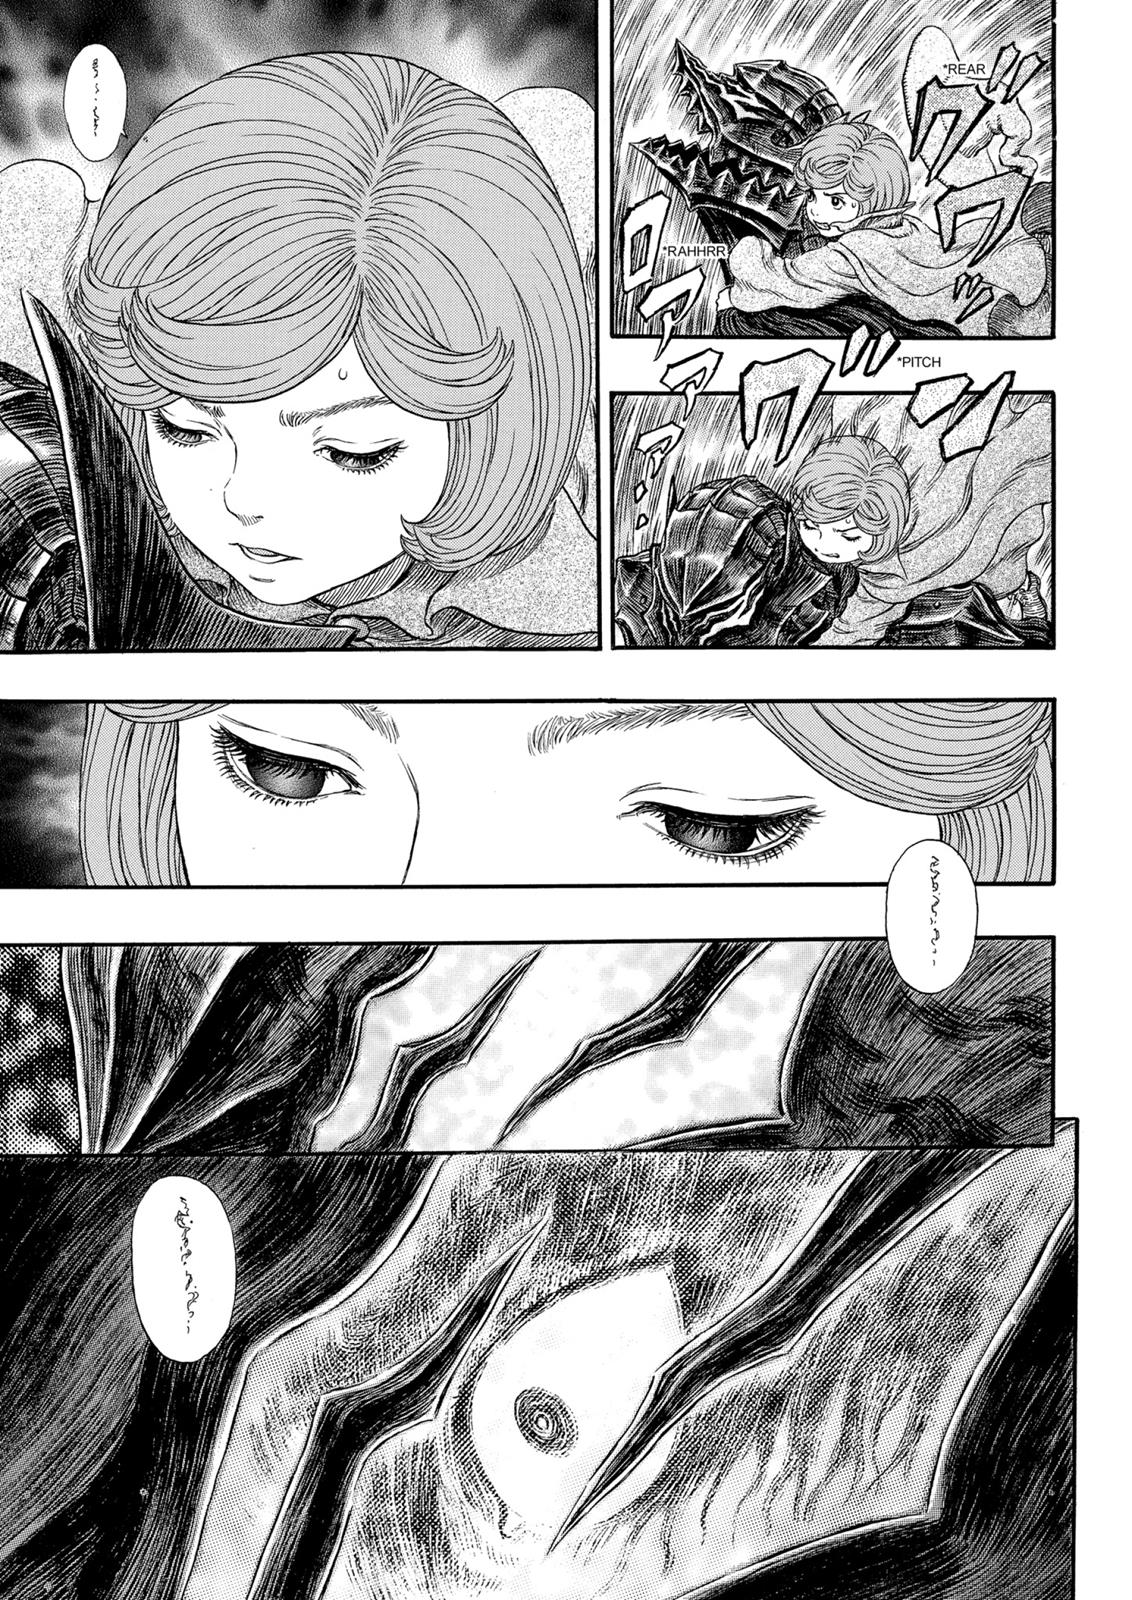 Berserk Manga Chapter 317 image 06